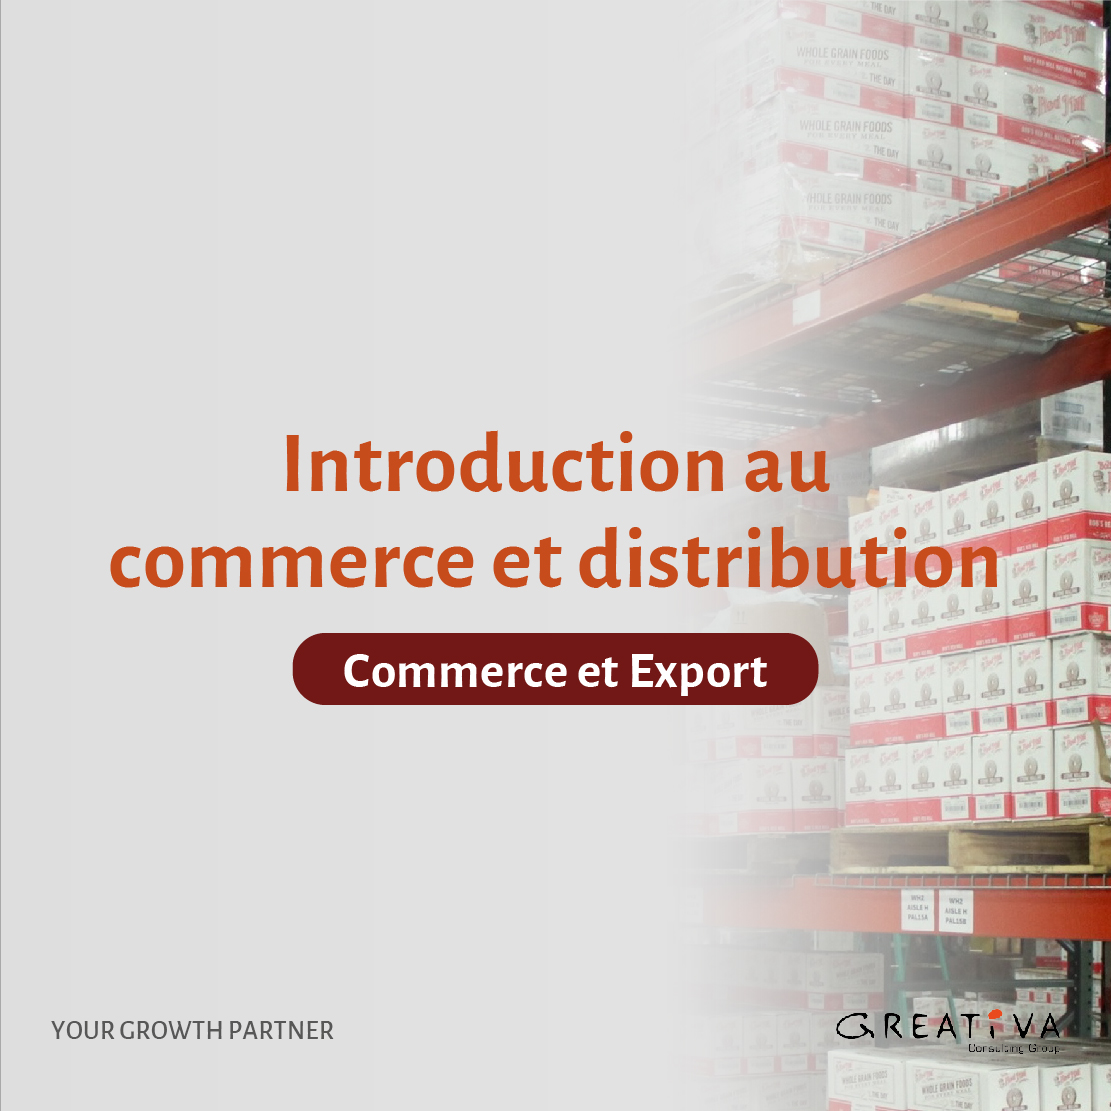 Introduction au commerce et distribution